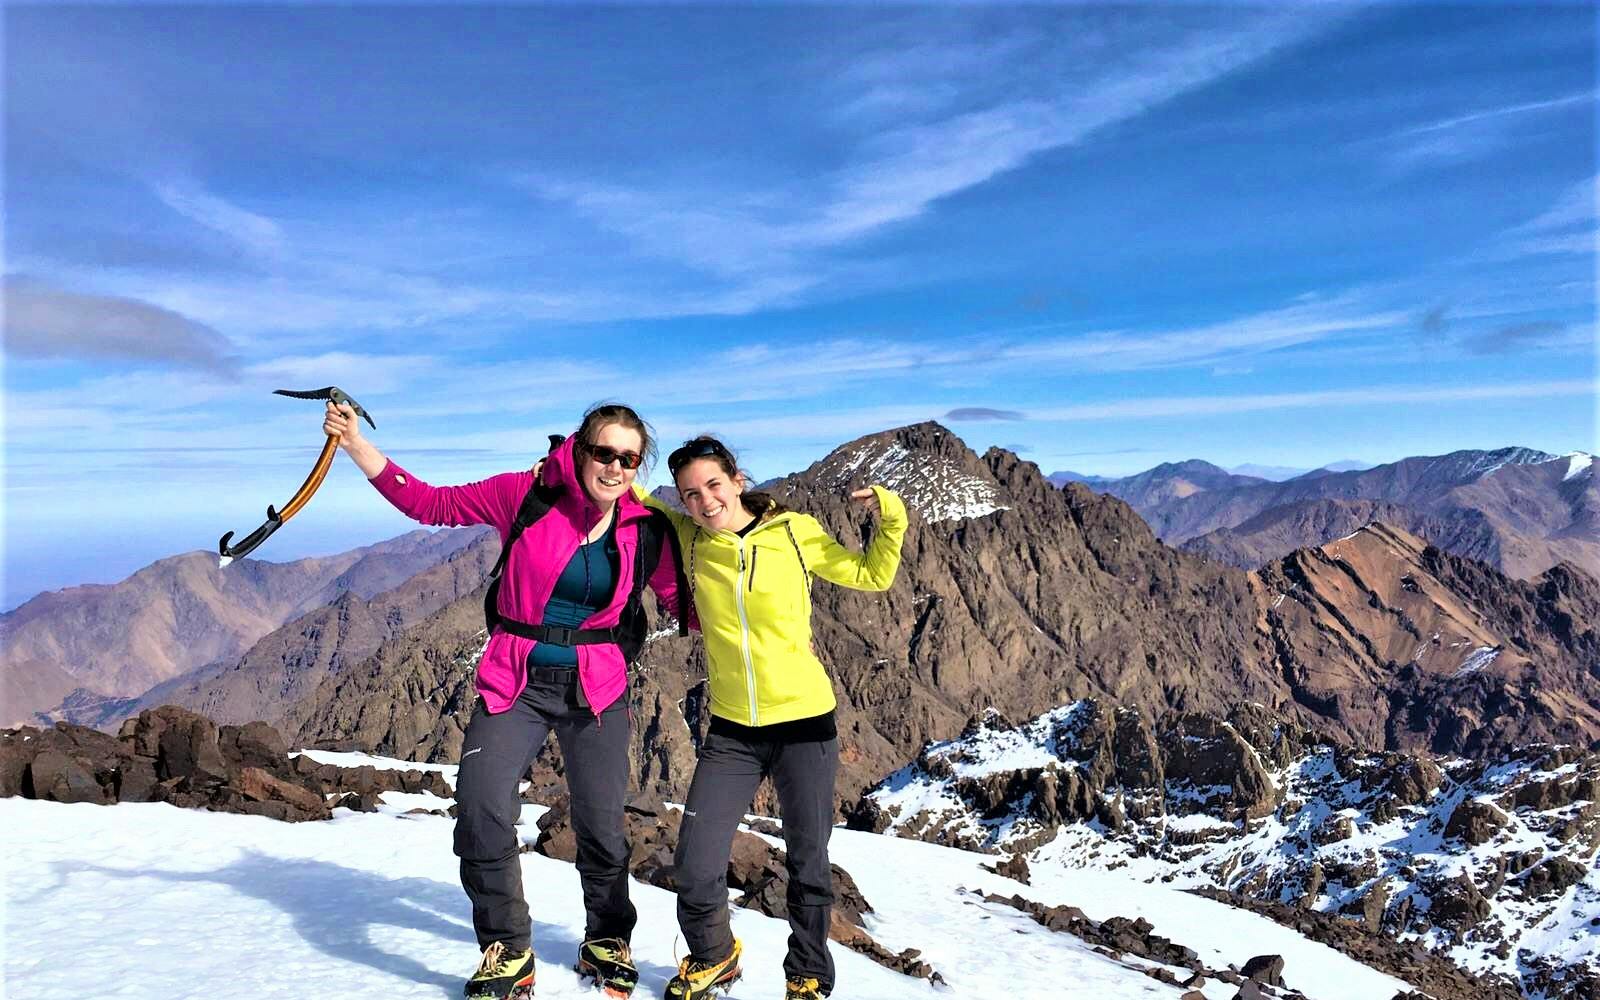 Toubkal Winter Ascent (4167m)